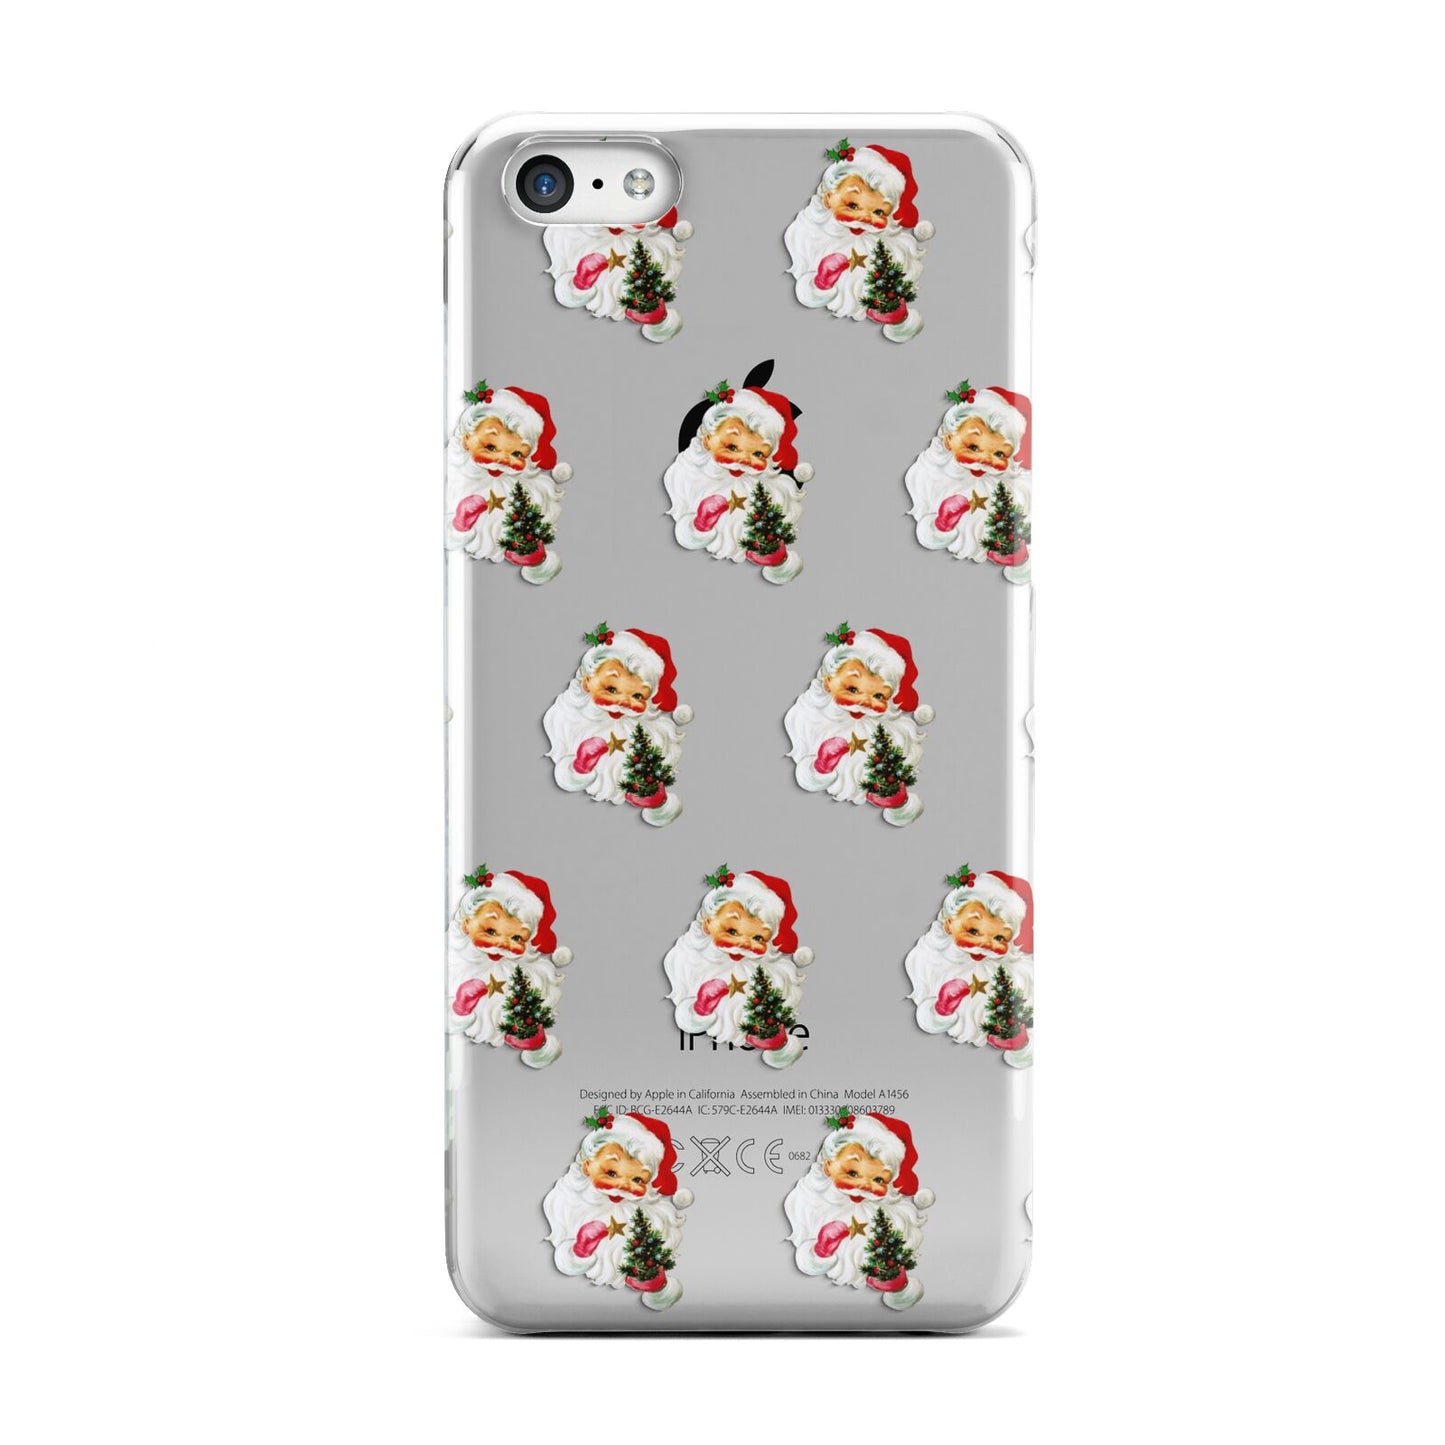 Retro Santa Face Apple iPhone 5c Case